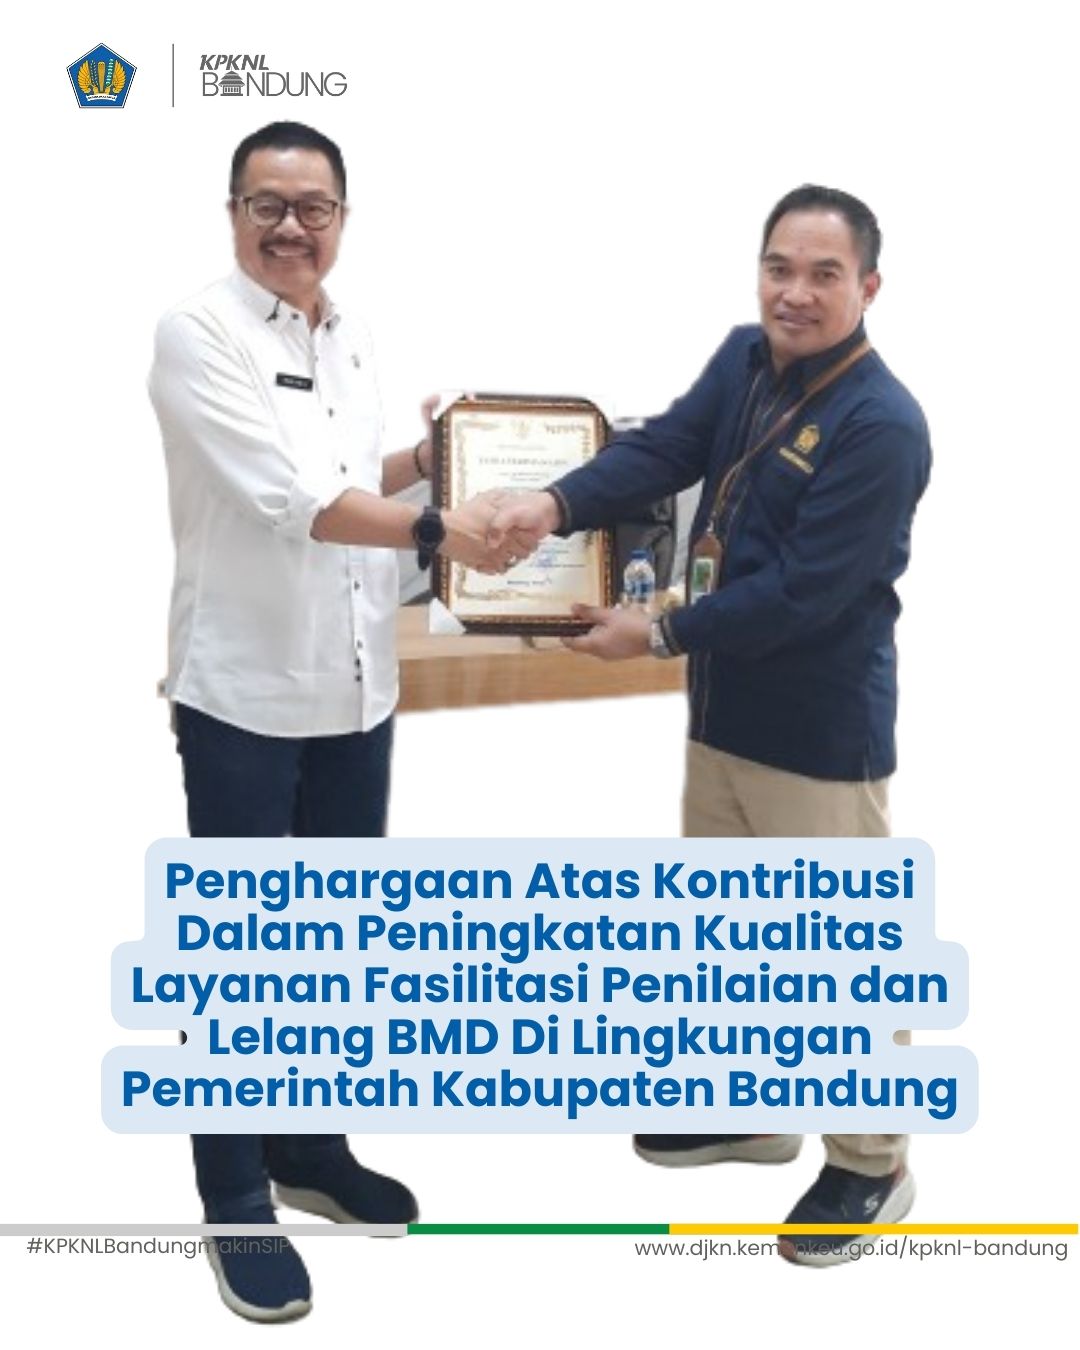 Penghargaan Atas Kontribusi Peningkatan Kualitas Layanan Fasilitasi Penilaian & Lelang BMD PEMKAB Bandung